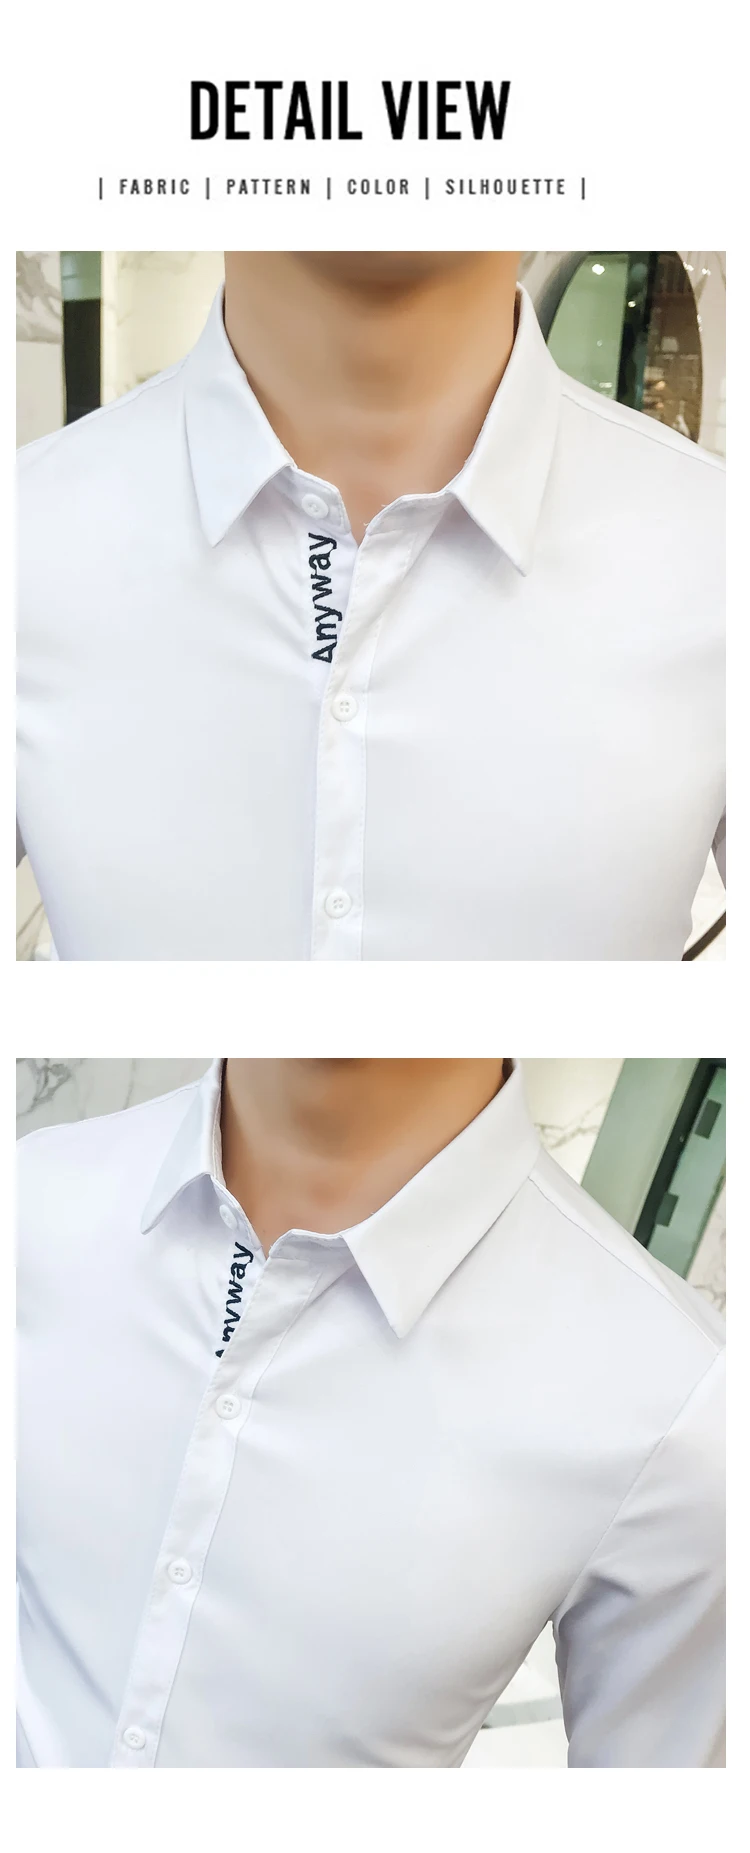 Высокое качество, белая мужская рубашка, весна, приталенная, с буквенным принтом, смокинг, рубашка, платье с длинным рукавом, повседневная, деловая, светская, мужская рубашка s 5XL-S